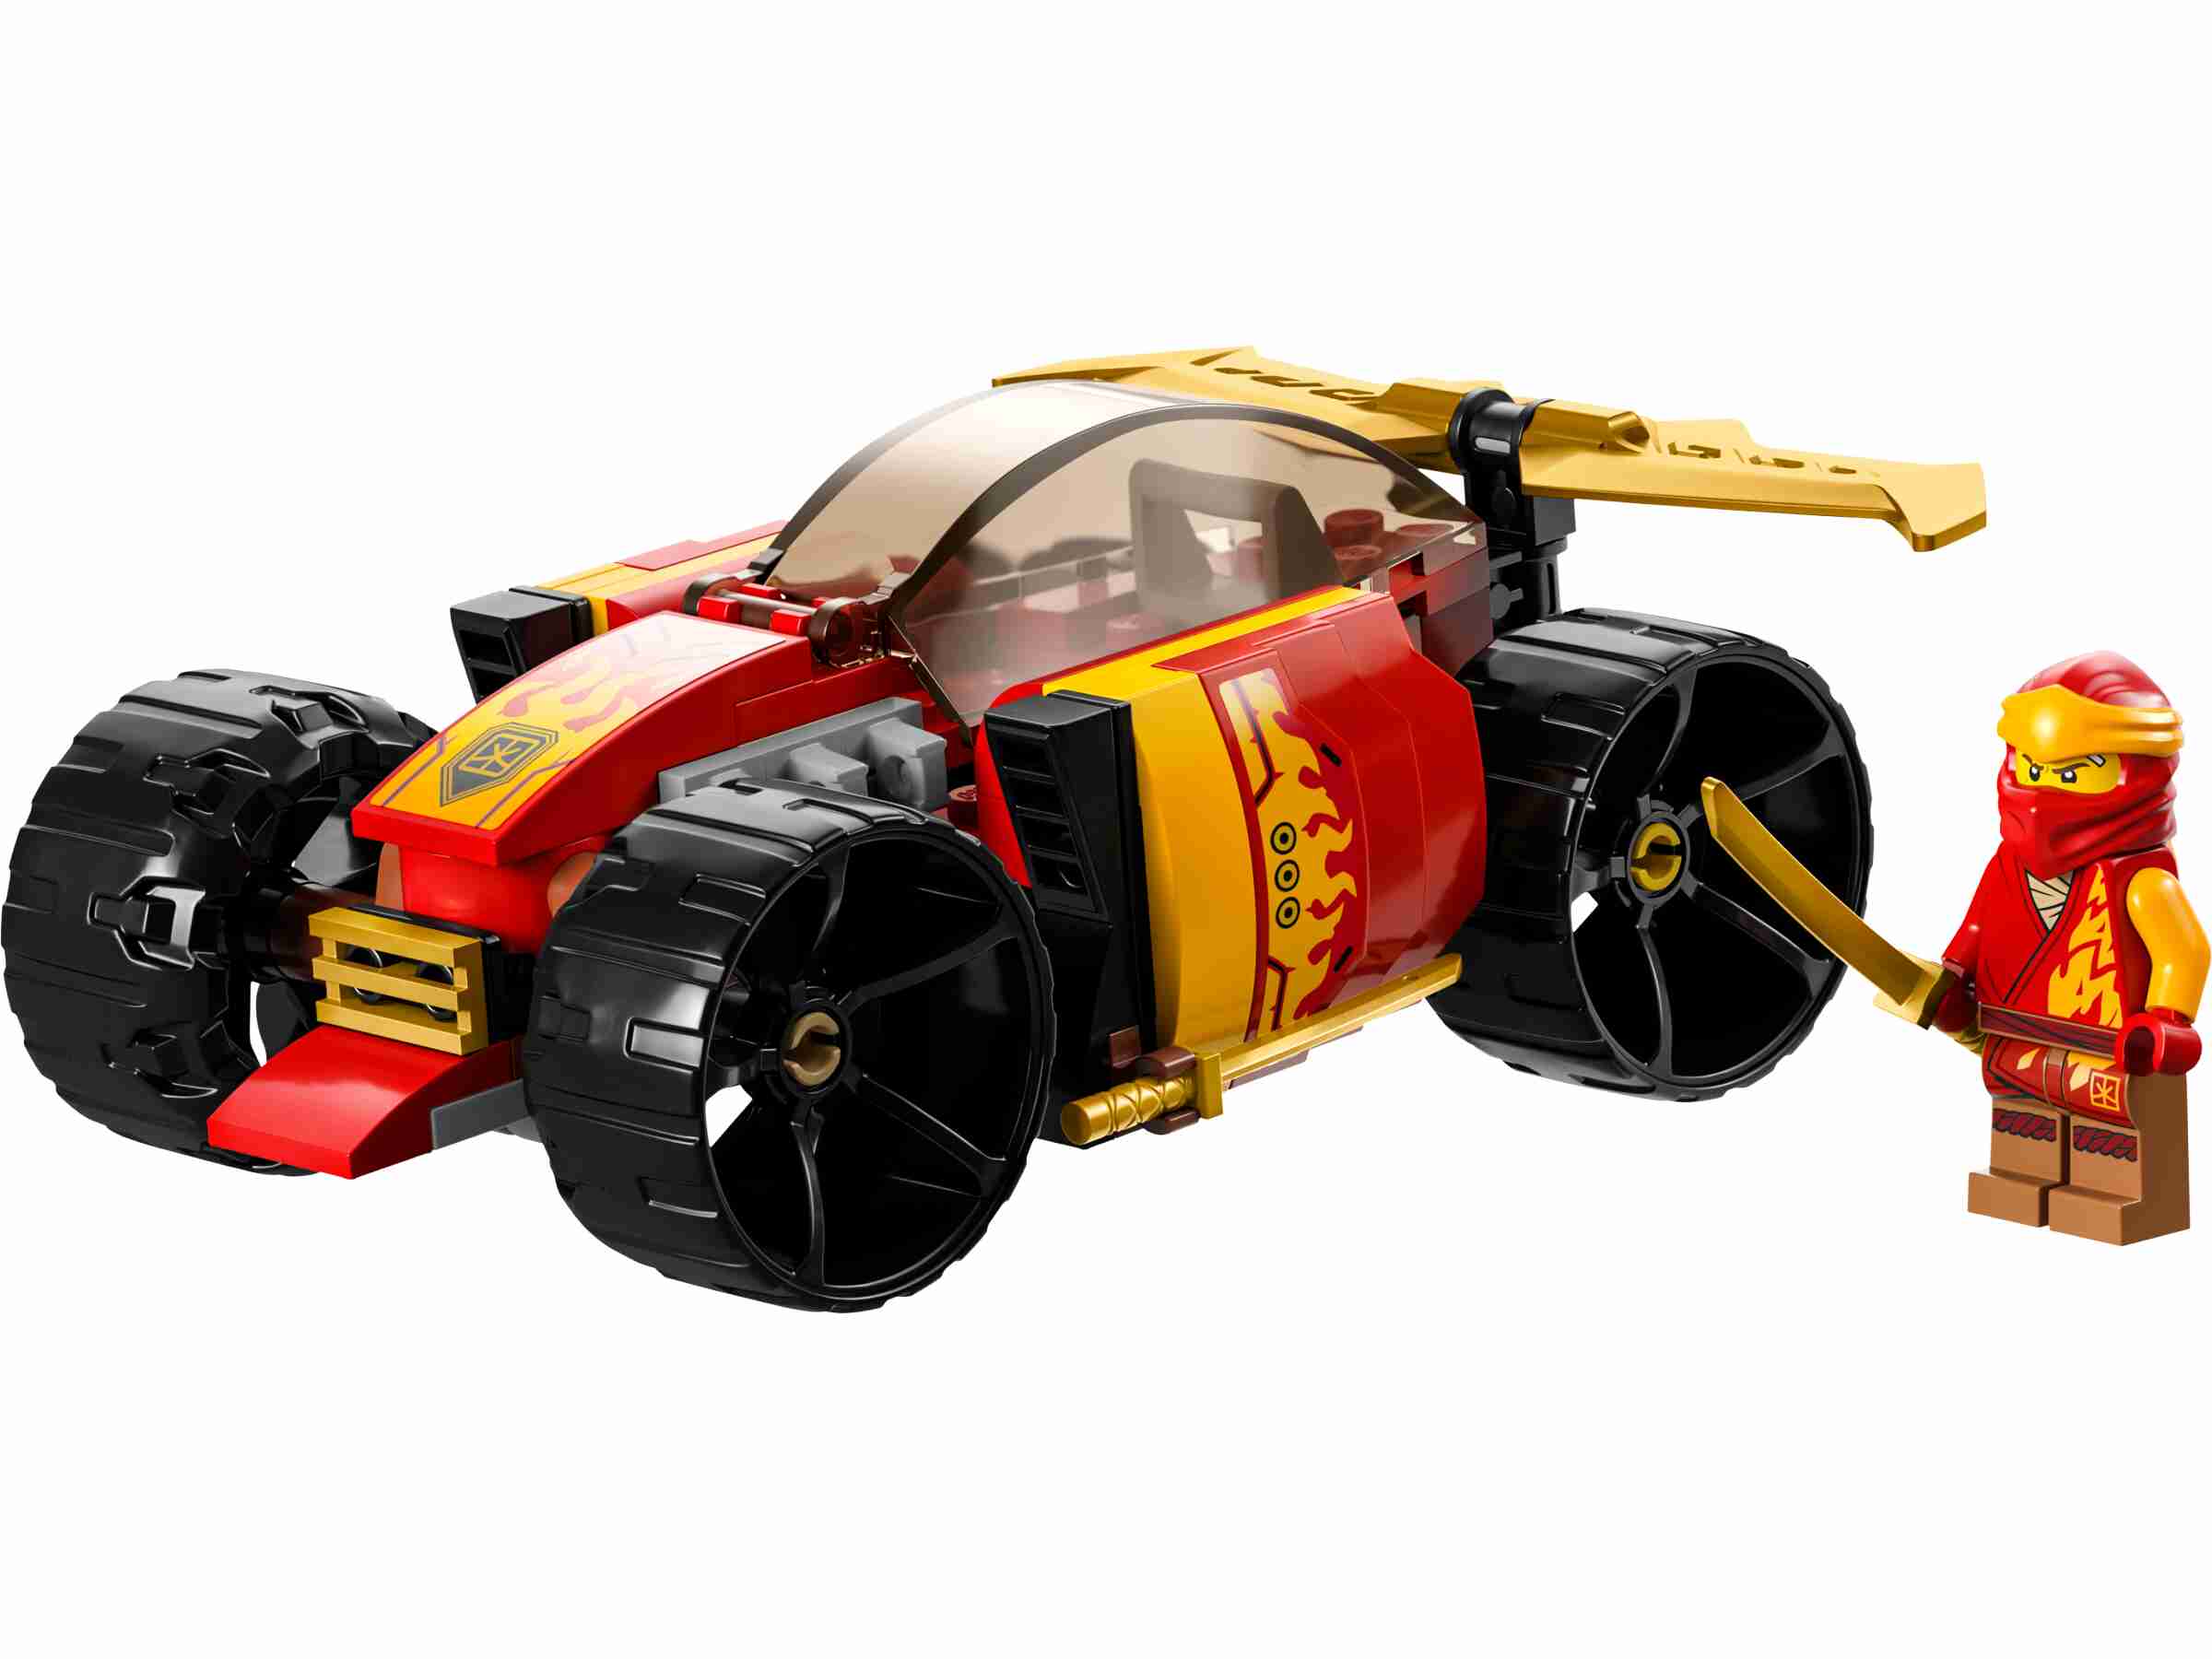 LEGO 71780 NINJAGO Kais Ninja-Rennwagen EVO, Minifigur Kai, 2 goldene Katanas